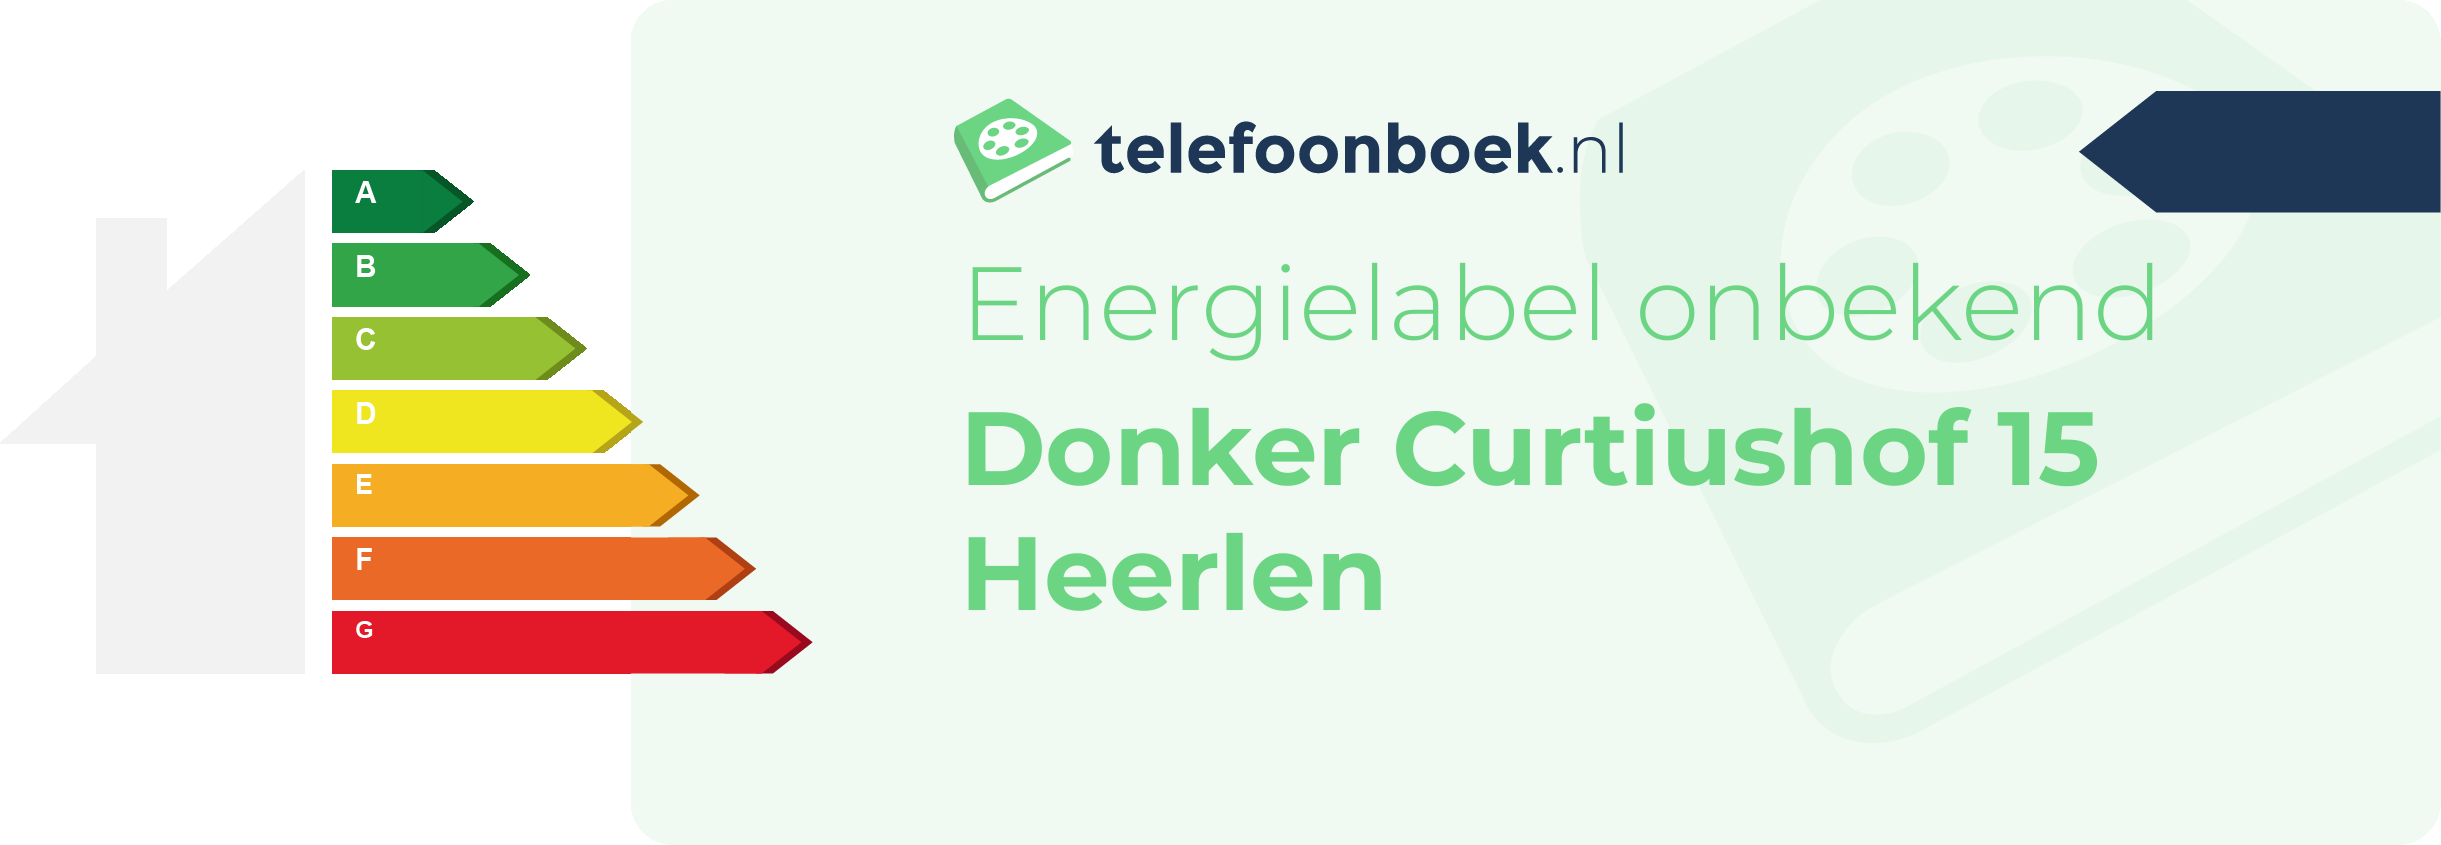 Energielabel Donker Curtiushof 15 Heerlen